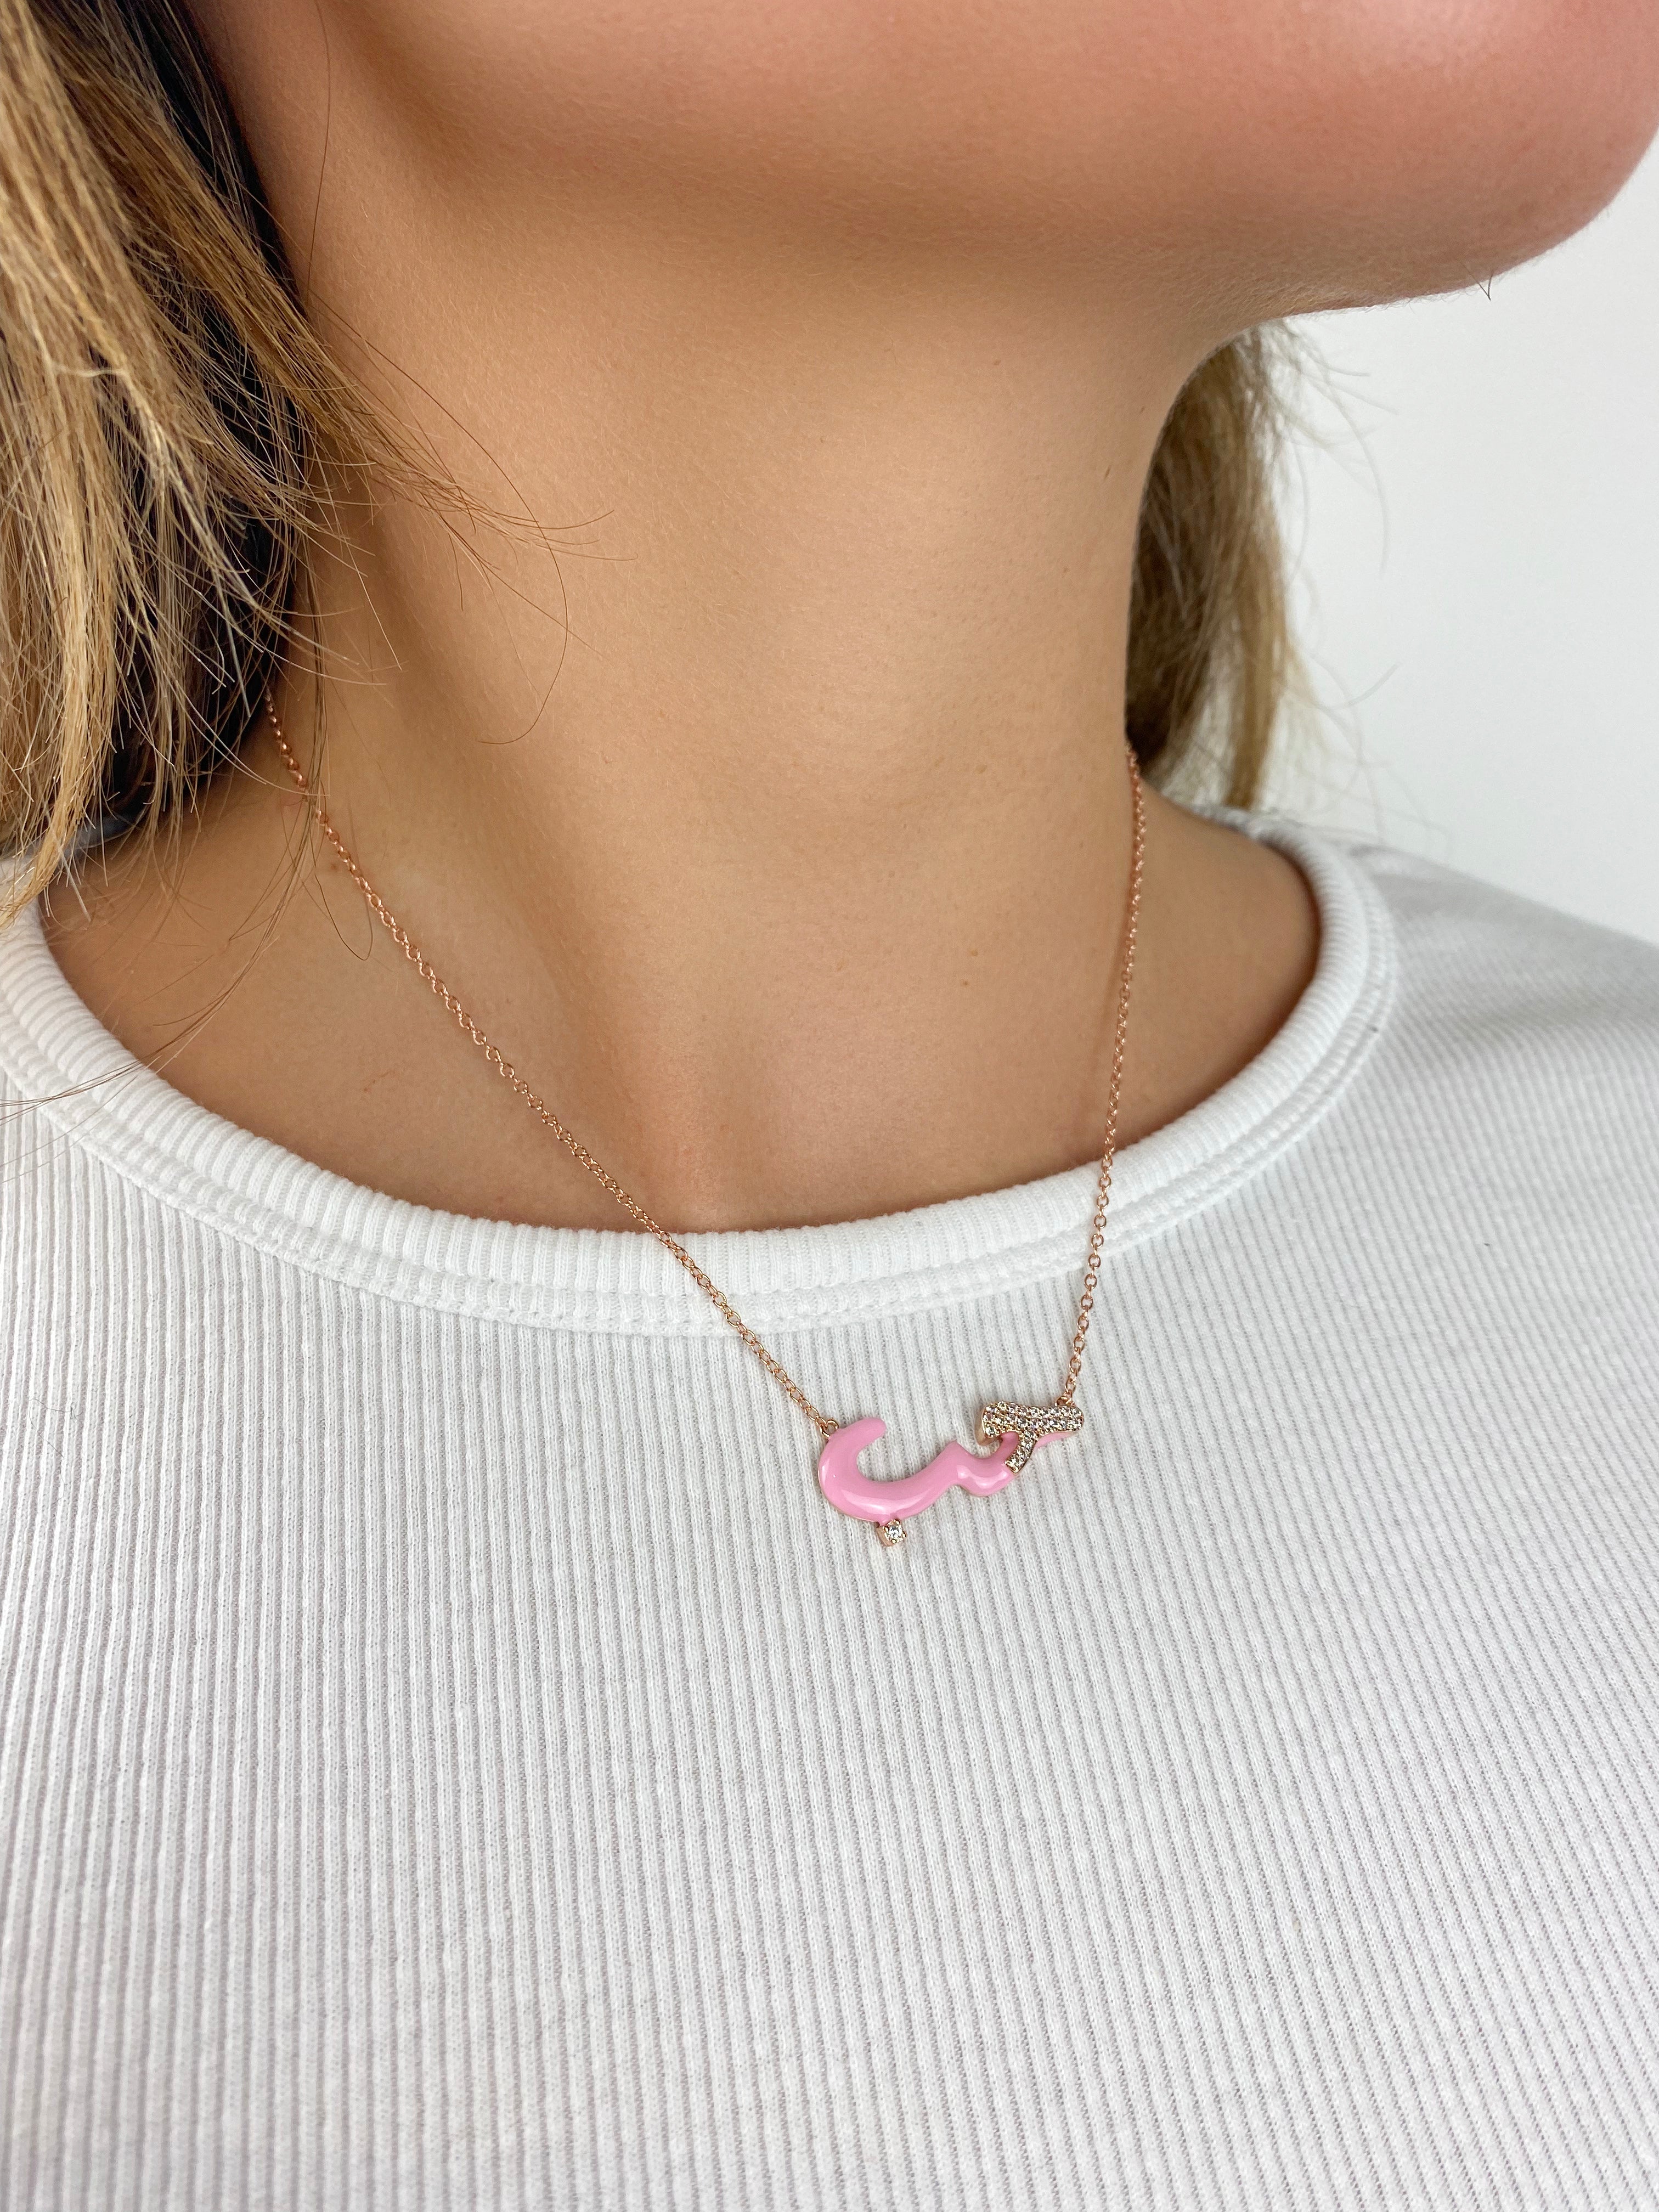 Enamel Love Necklace in Pink